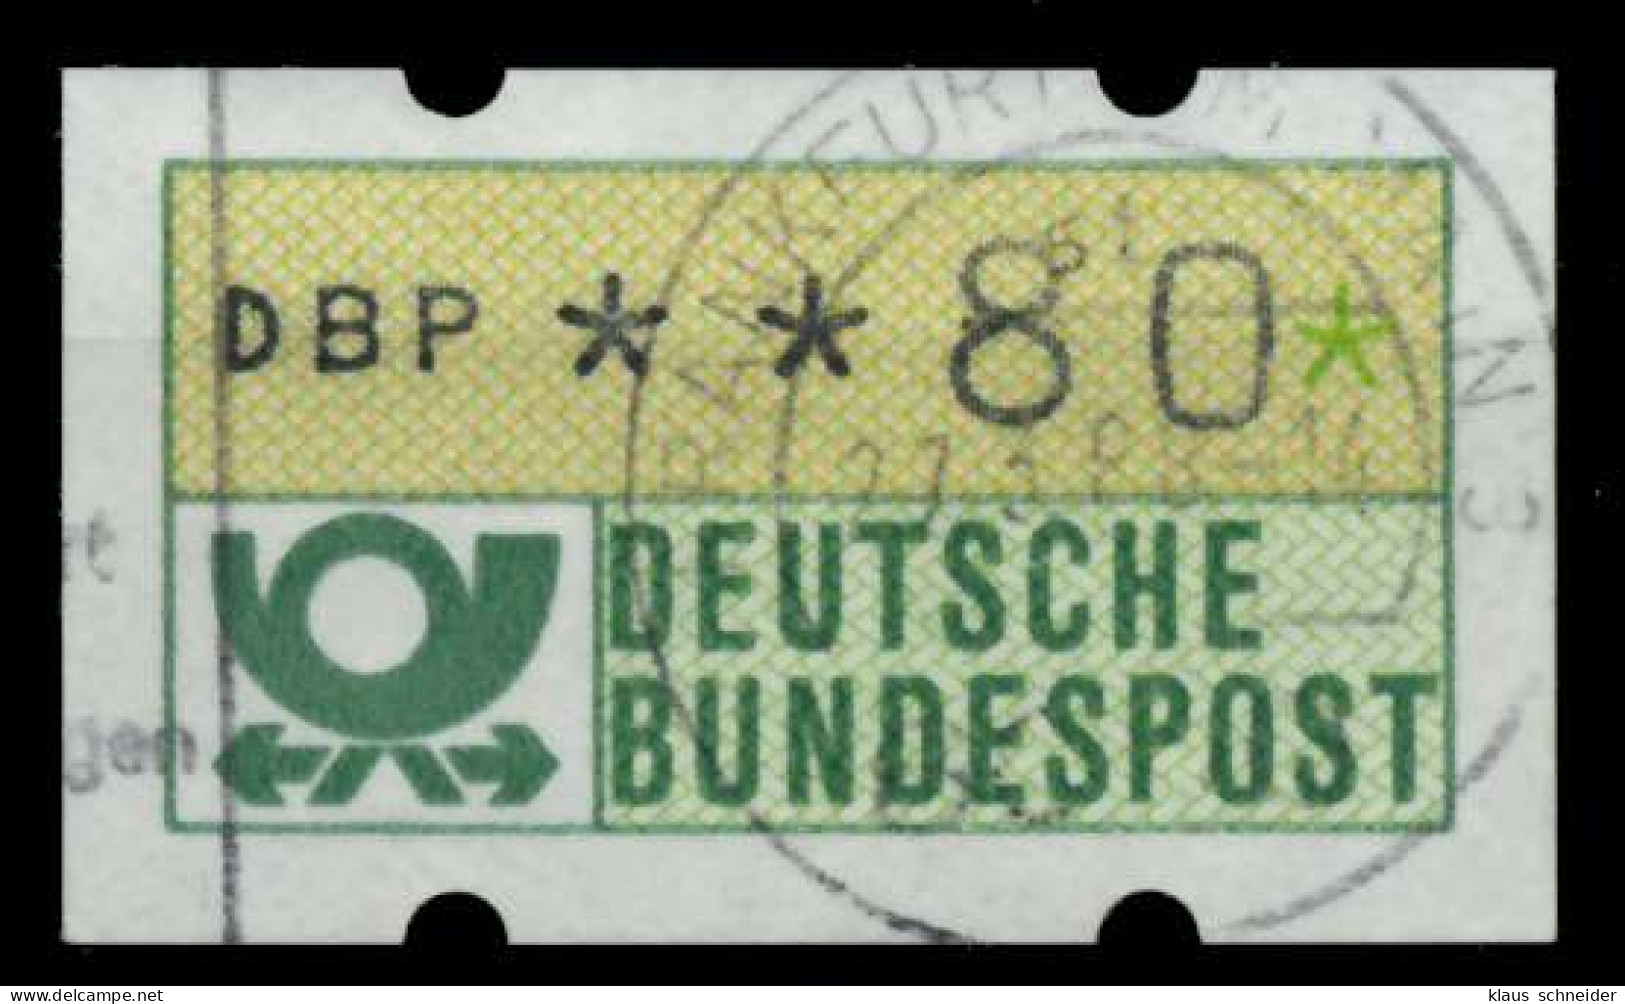 BRD ATM 1981 Nr 1-1-080R Zentrisch Gestempelt X9740E2 - Machine Labels [ATM]